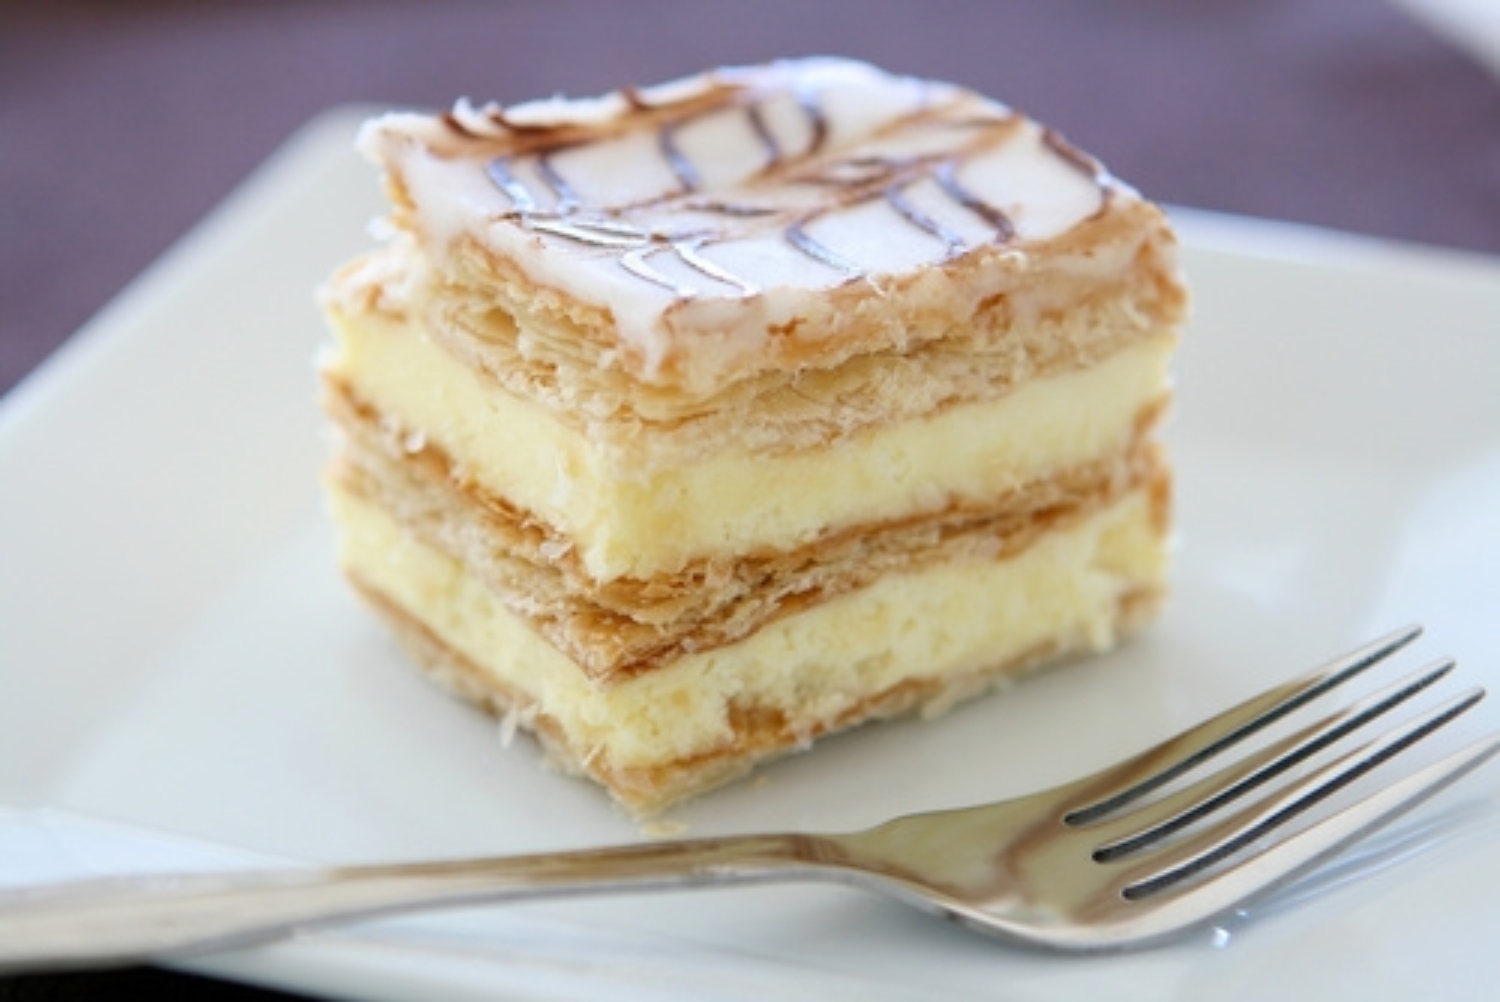 Crème pâtissière à la vanille Bourbon - alsa - depuis 1897